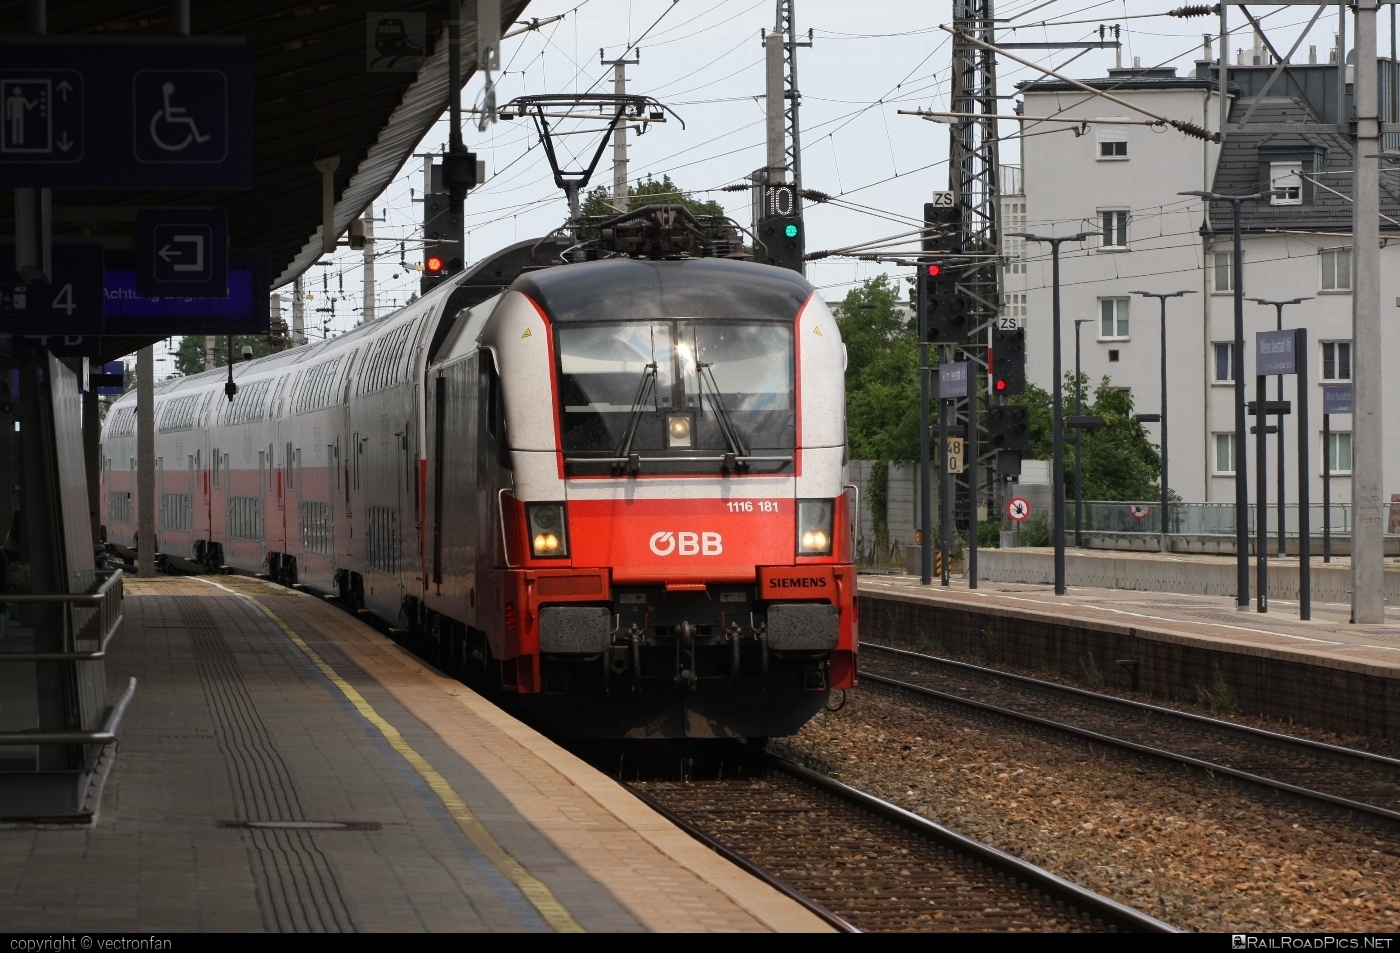 Siemens ES 64 U2 - 1116 181 operated by Österreichische Bundesbahnen #es64 #es64u2 #eurosprinter #obb #osterreichischebundesbahnen #siemens #siemensEs64 #siemensEs64u2 #siemenstaurus #taurus #tauruslocomotive